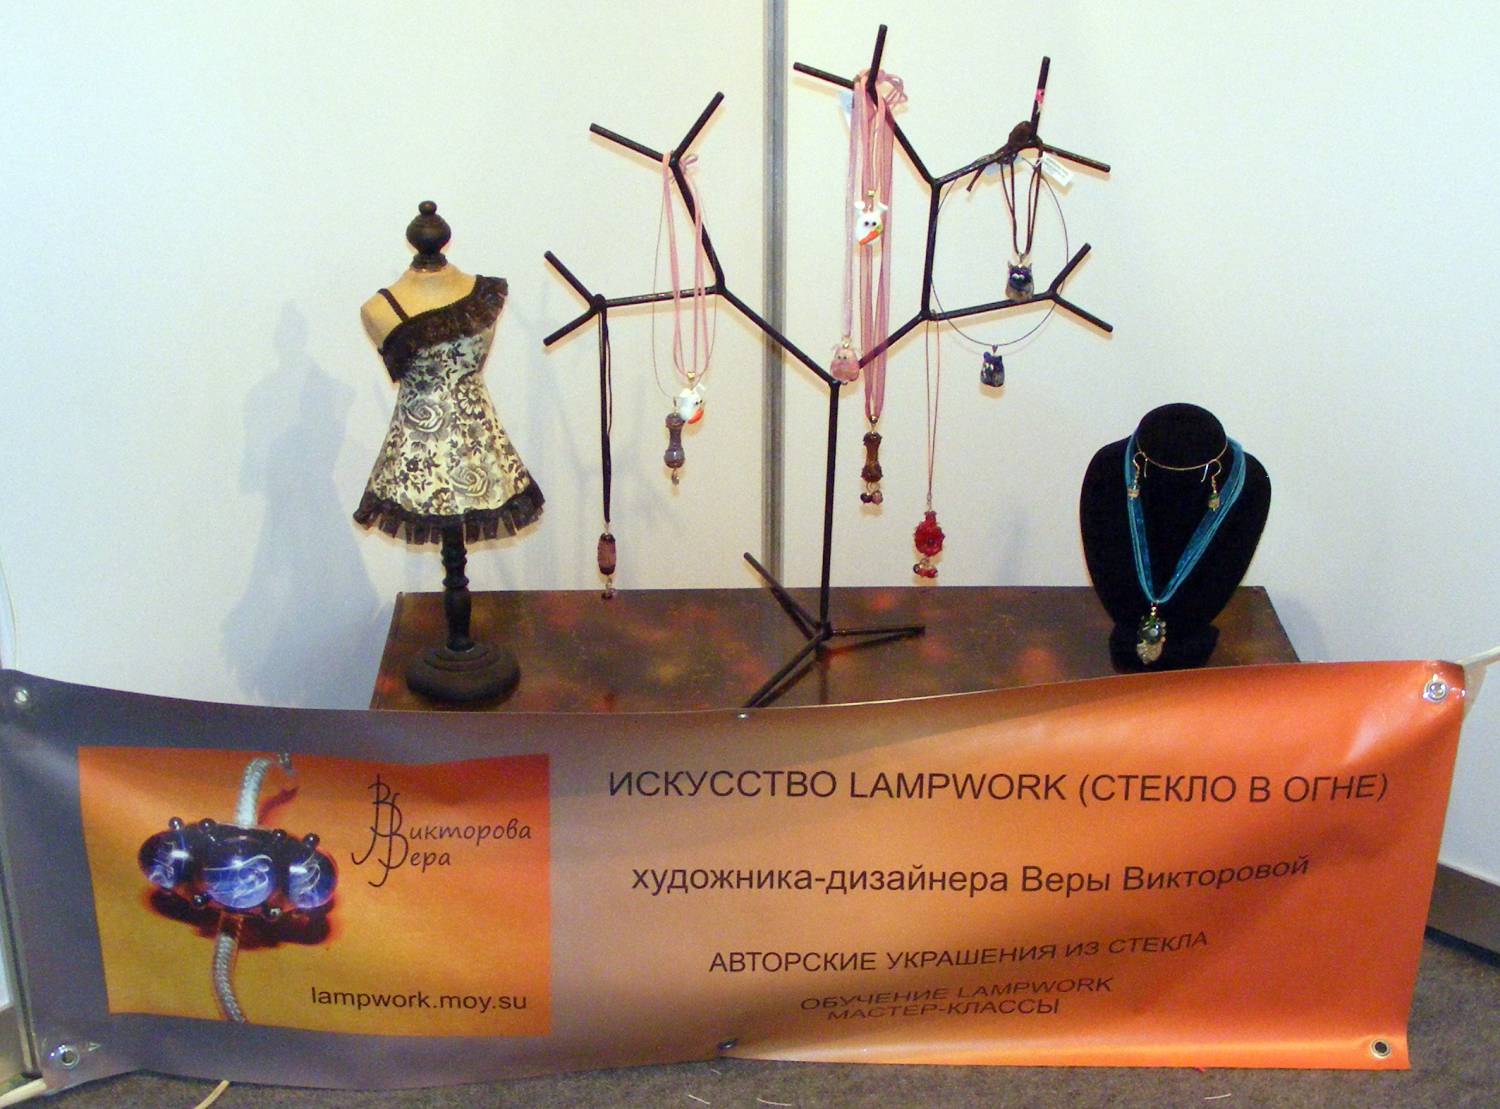 Московский международный художественный салон ЦДХ 2011 - март